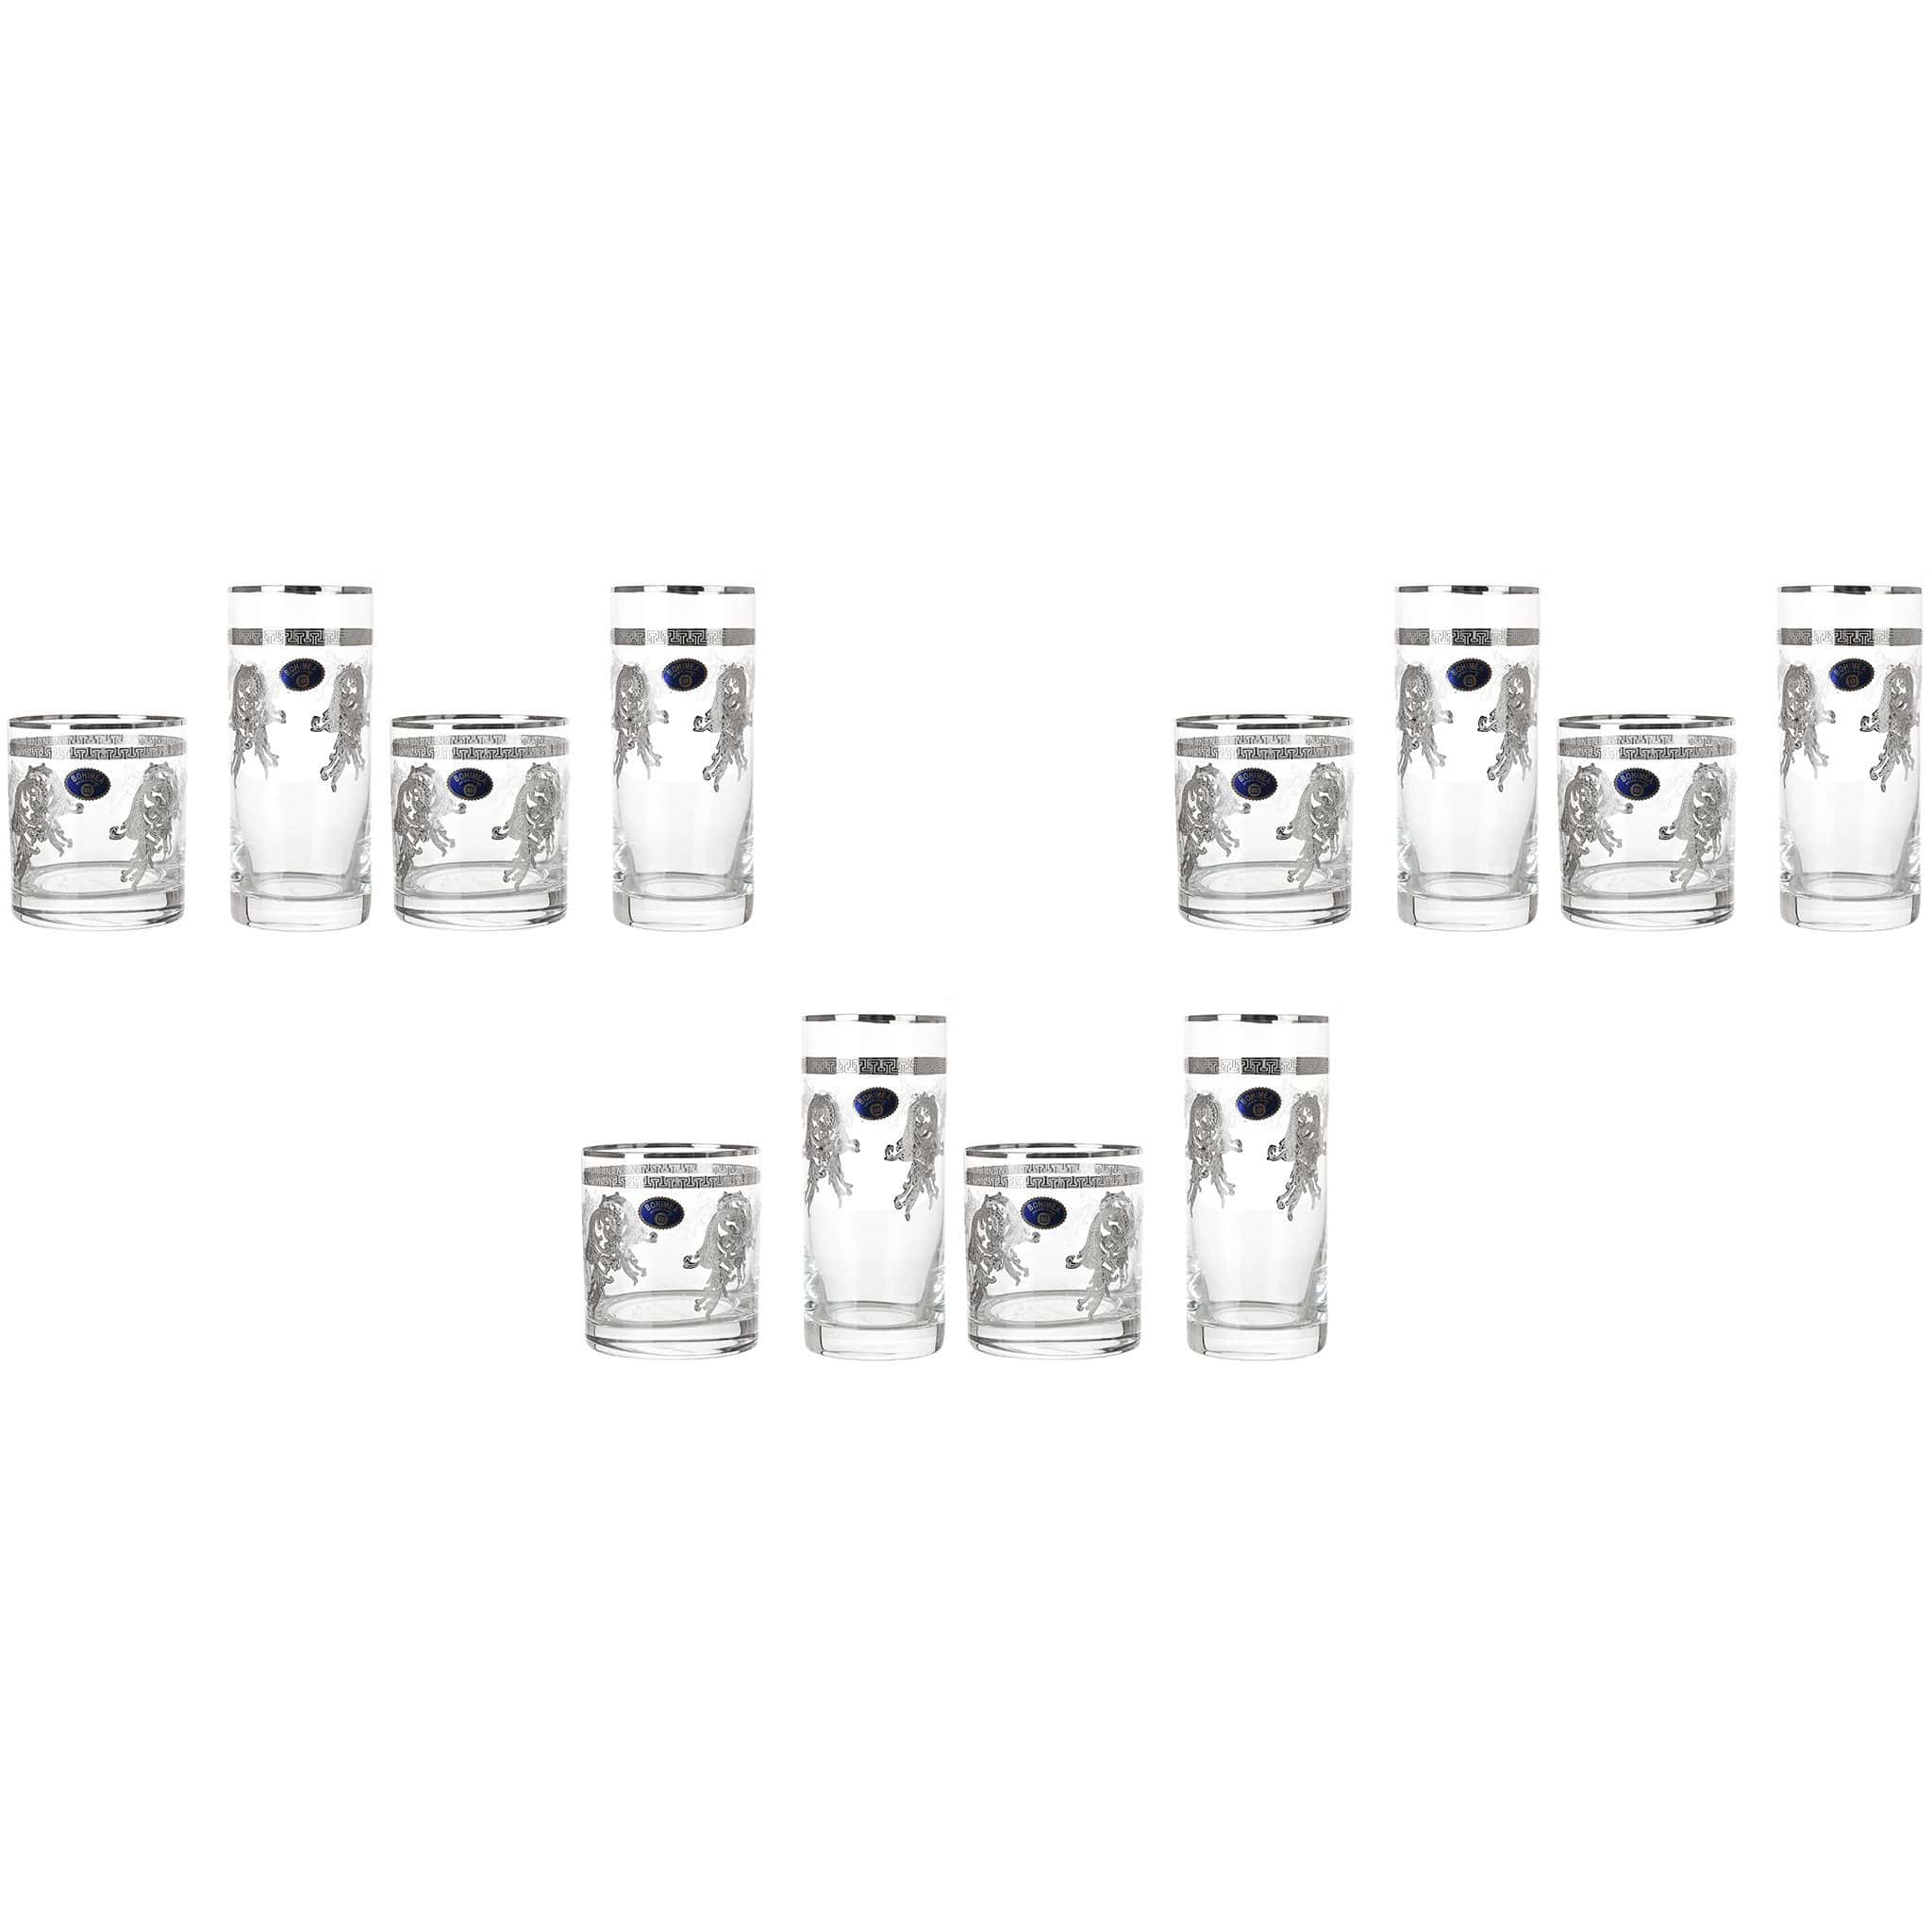 بوهيميا كريستال - طقم أكواب زجاج 12 قطعة - فضي - 300 مل و 280 مل - 2700010705